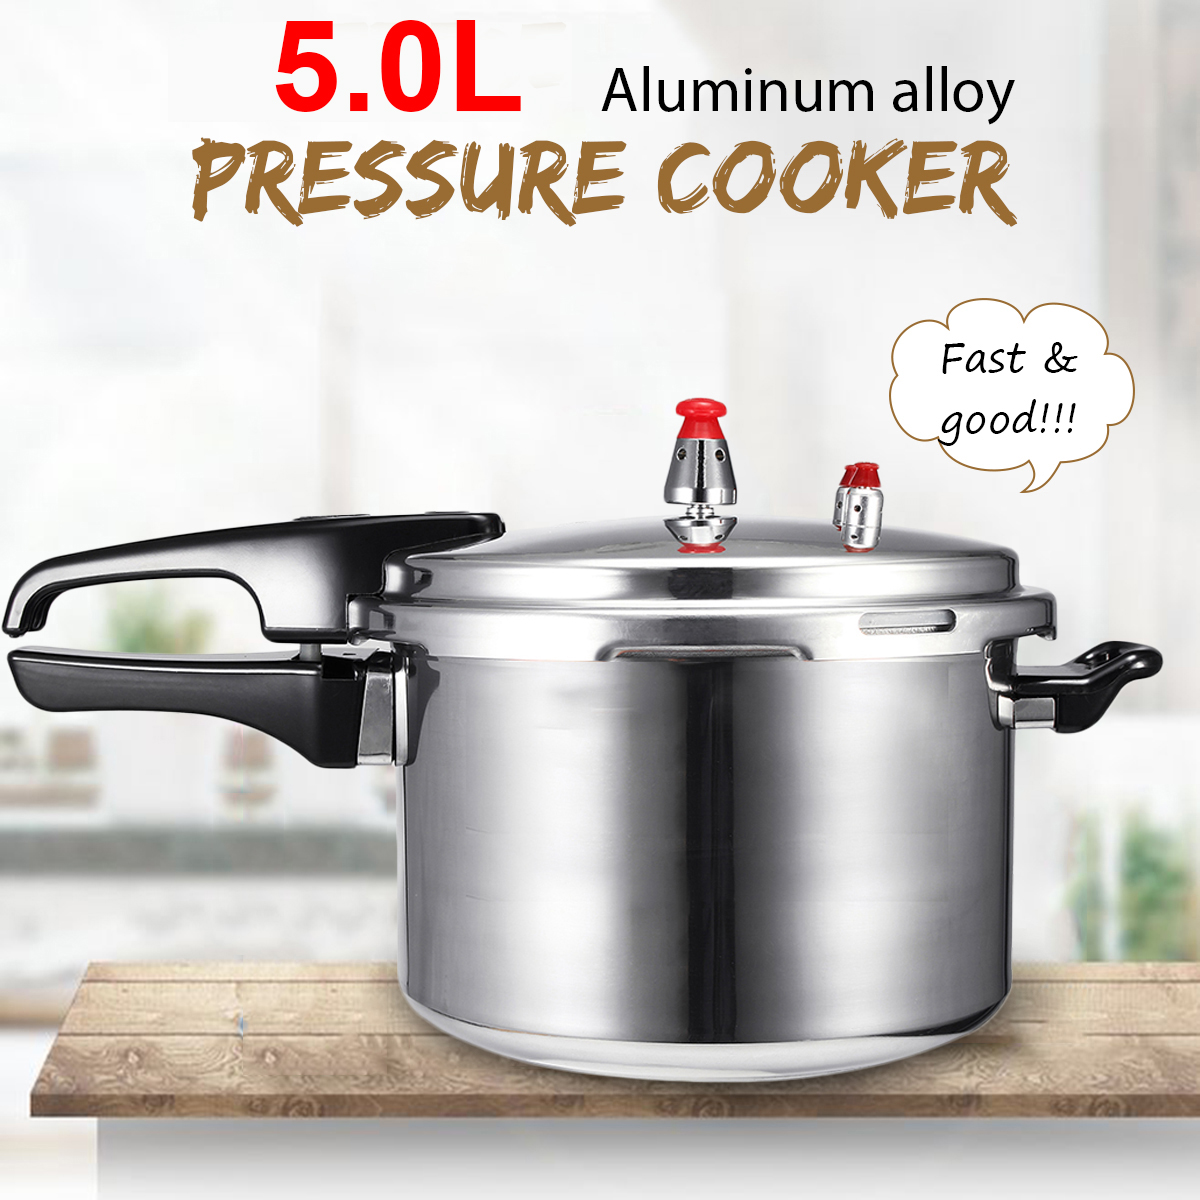 4L5L-Pressure-Cooker-Commercial-Aluminum-Alloy-Pressure-Cooker-1720053-4